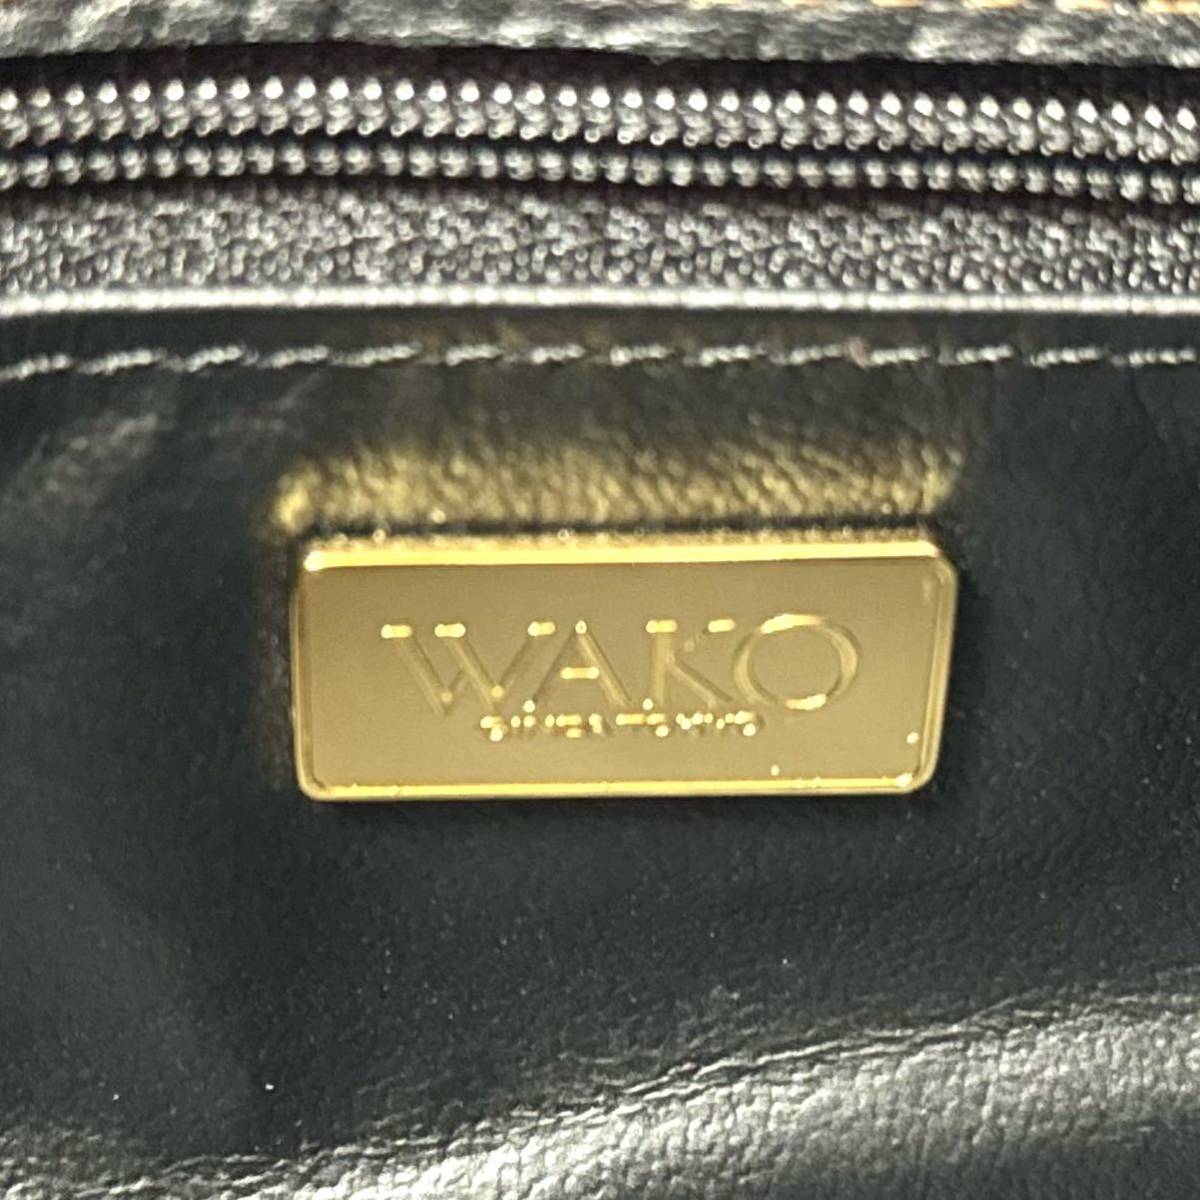 未使用級 WAKO ワコウ 銀座 和光 シボ革 ブラック 黒 シルバー金具 レザー ハンドバッグ トートバッグ ショルダーバッグ 保存袋付き 